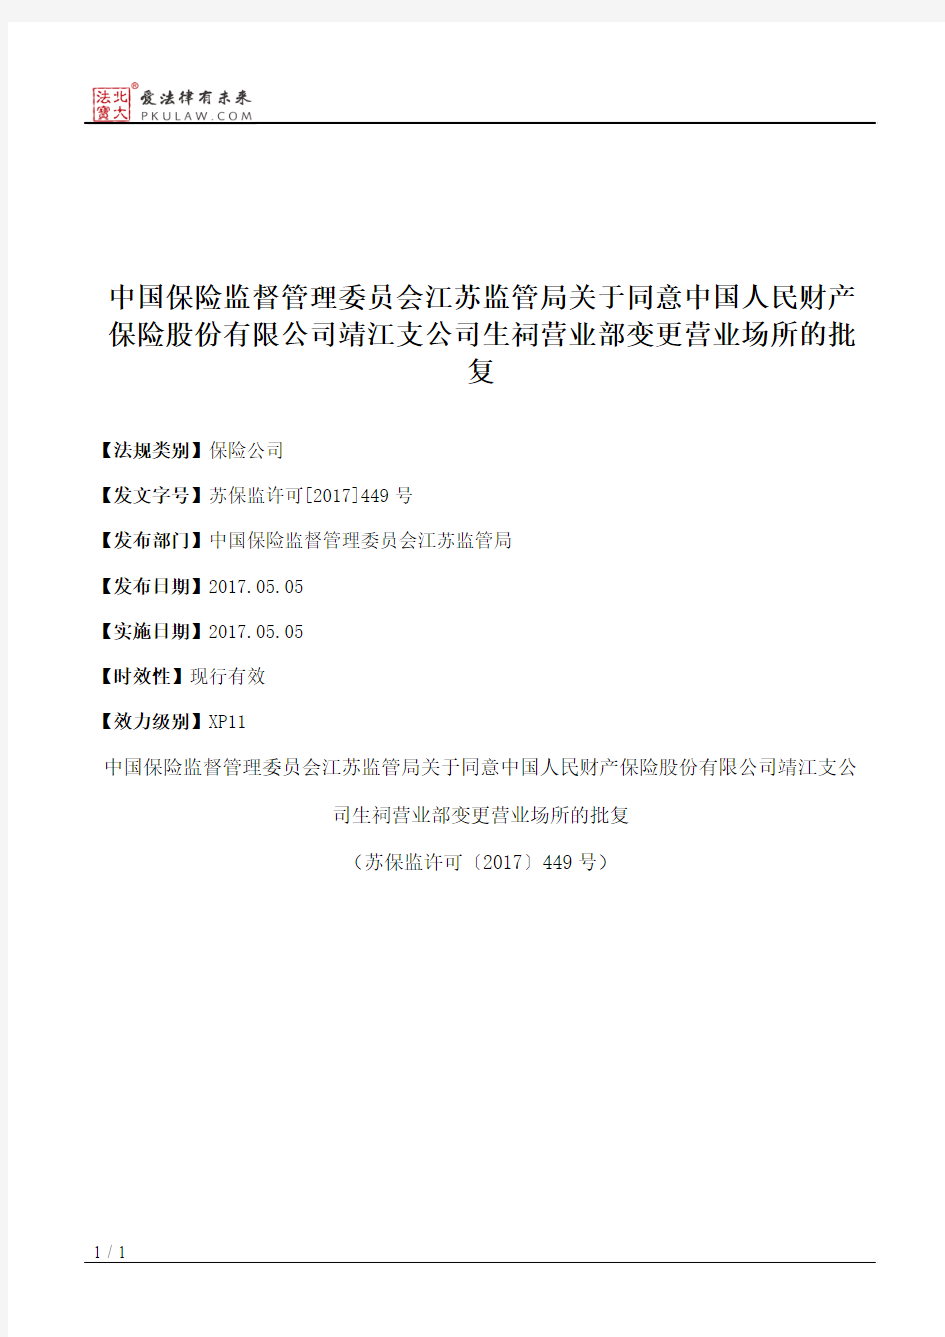 中国保险监督管理委员会江苏监管局关于同意中国人民财产保险股份